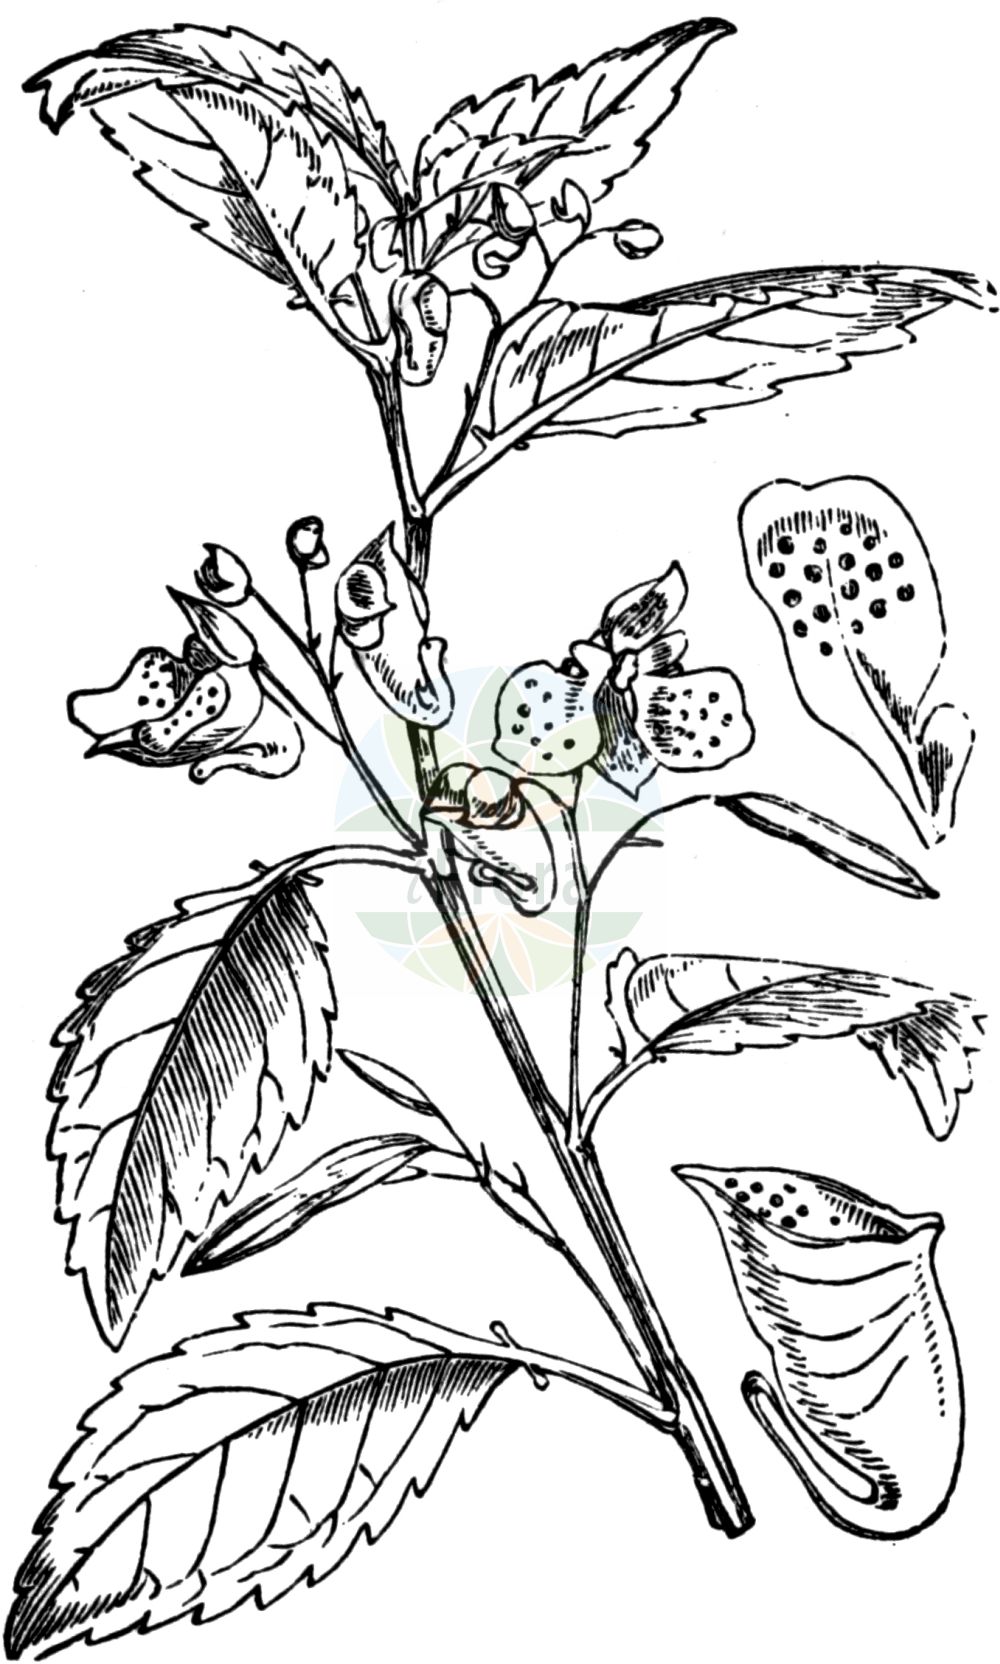 Historische Abbildung von Impatiens noli-tangere (Großes Springkraut - Touch-me-Not Balsam). Das Bild zeigt Blatt, Bluete, Frucht und Same. ---- Historical Drawing of Impatiens noli-tangere (Großes Springkraut - Touch-me-Not Balsam). The image is showing leaf, flower, fruit and seed.(Impatiens noli-tangere,Großes Springkraut,Touch-me-Not Balsam,Impatiens noli-tangere,Grosses Springkraut,Echtes Springkraut,Ruehr-mich-nicht-an,Wald-Springkraut,Touch-me-Not Balsam,Touch-me-Not,Western Touch-me-Not,Wild Balsam,Yellow Balsam,Impatiens,Springkraut,Touch-me-Not,Balsaminaceae,Springkrautgewächse,Balsam family,Blatt,Bluete,Frucht,Same,leaf,flower,fruit,seed,Fitch et al. (1880))